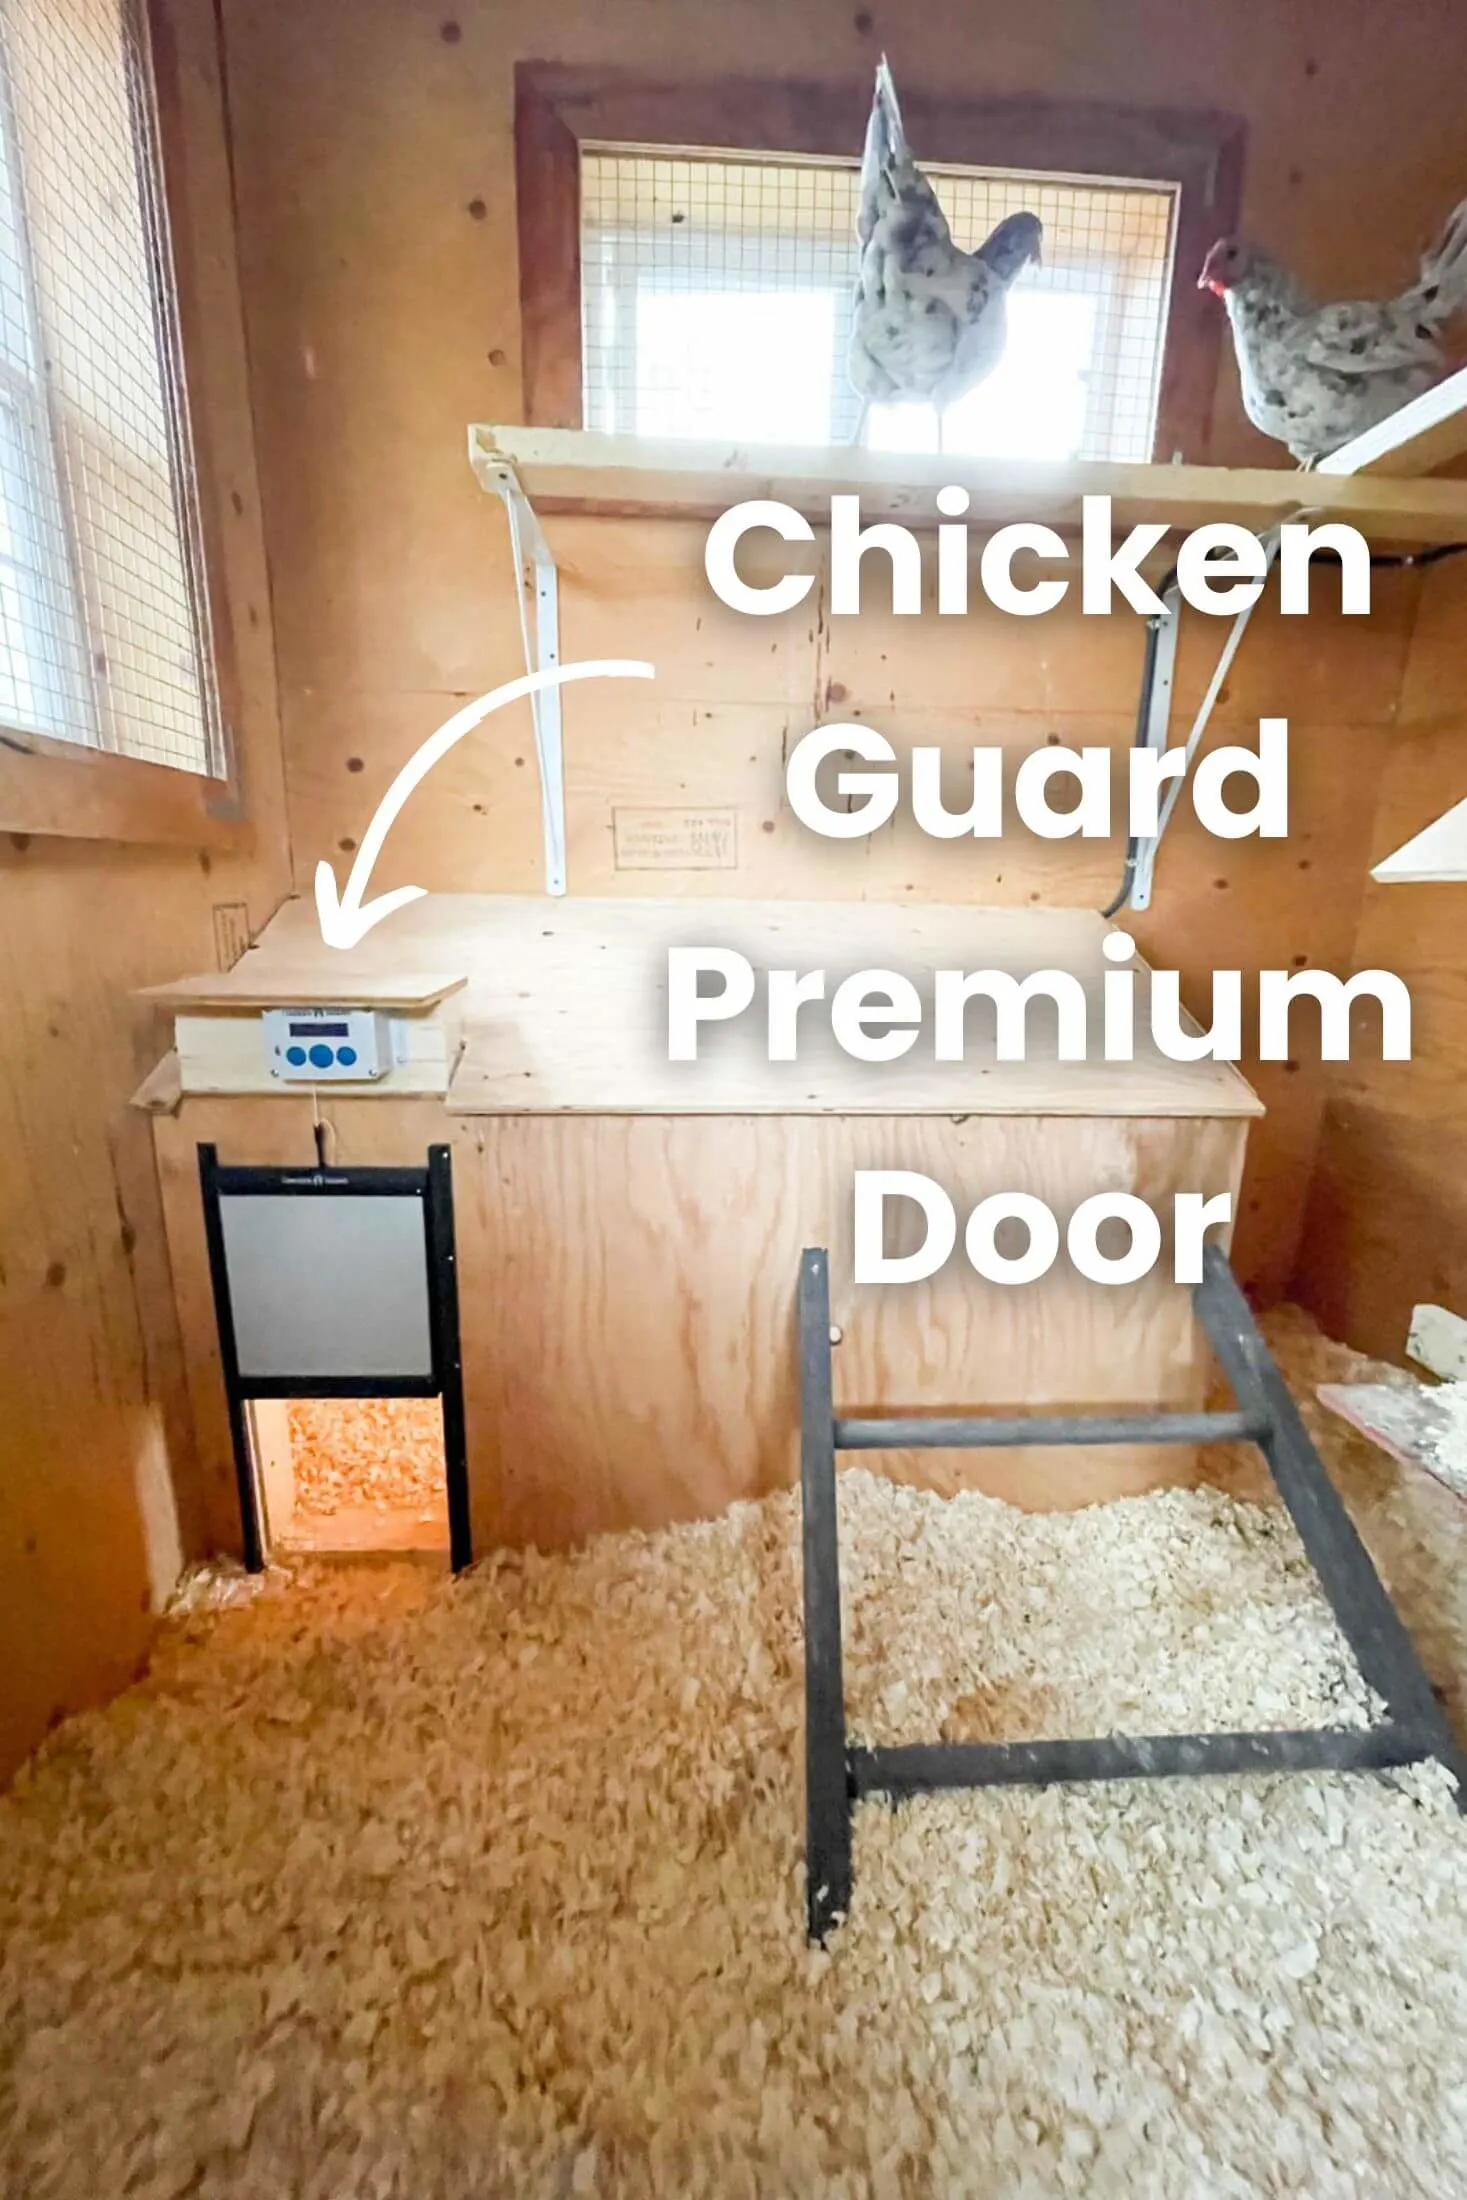 Chicken guard premium door installed inside chicken coop.